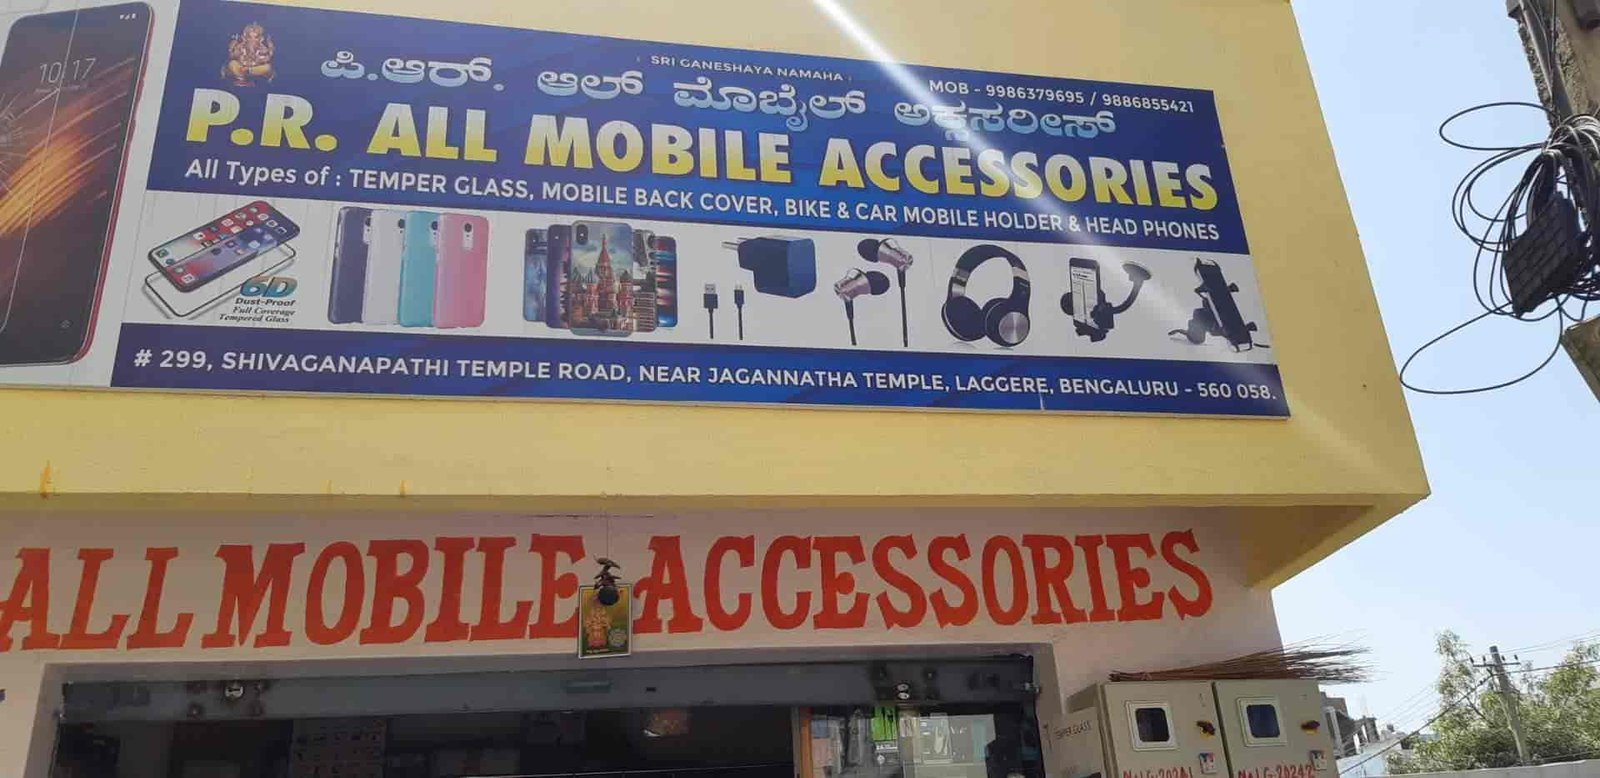 P.R All Mobile Accessories 